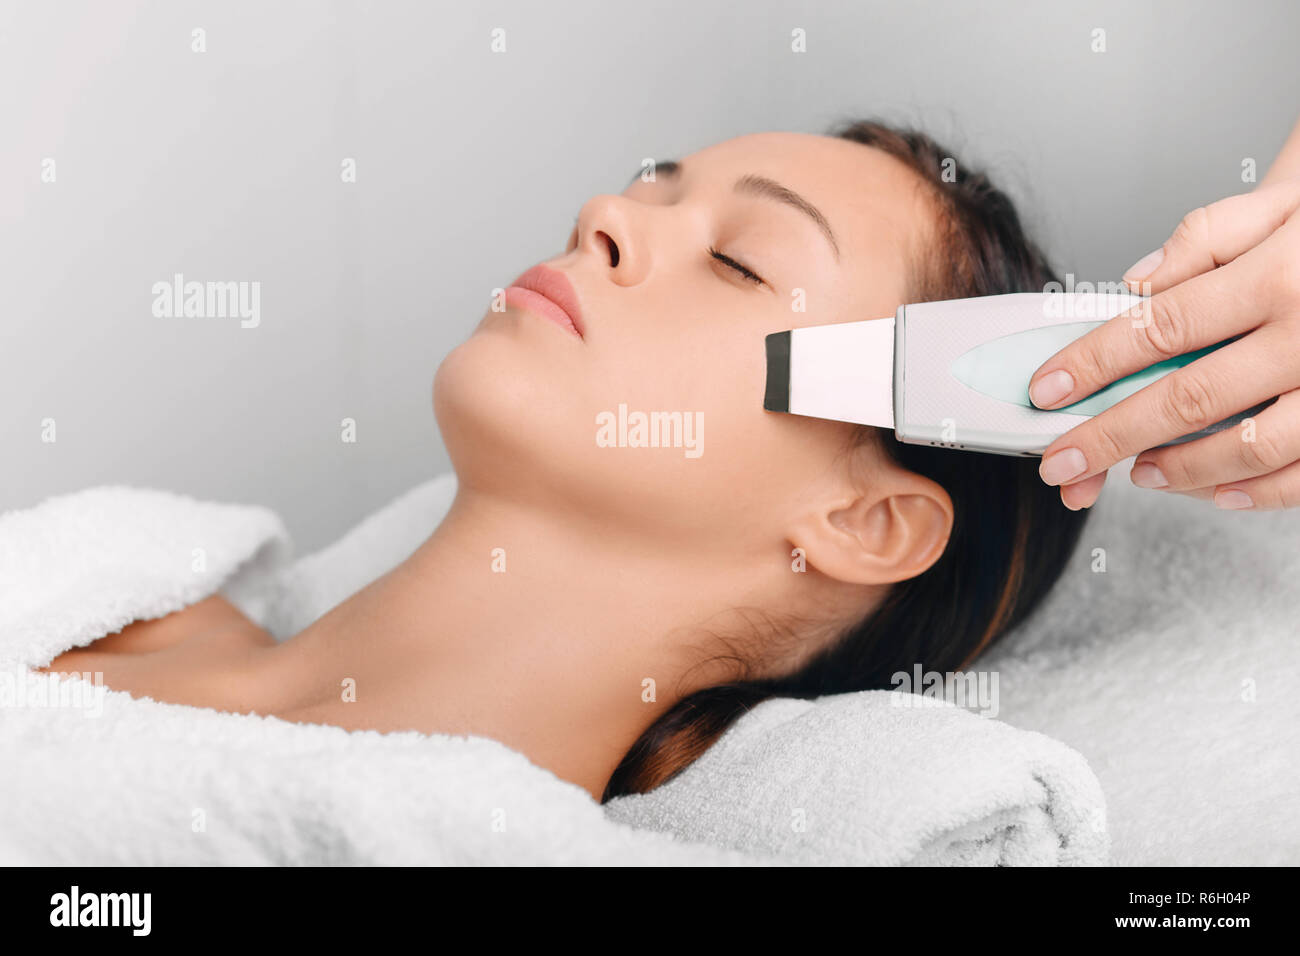 Schöne Frau mit Ultraschall haut Reinigung, gesichtspeeling. Kosmetik und  Gesichtspflege Stockfotografie - Alamy